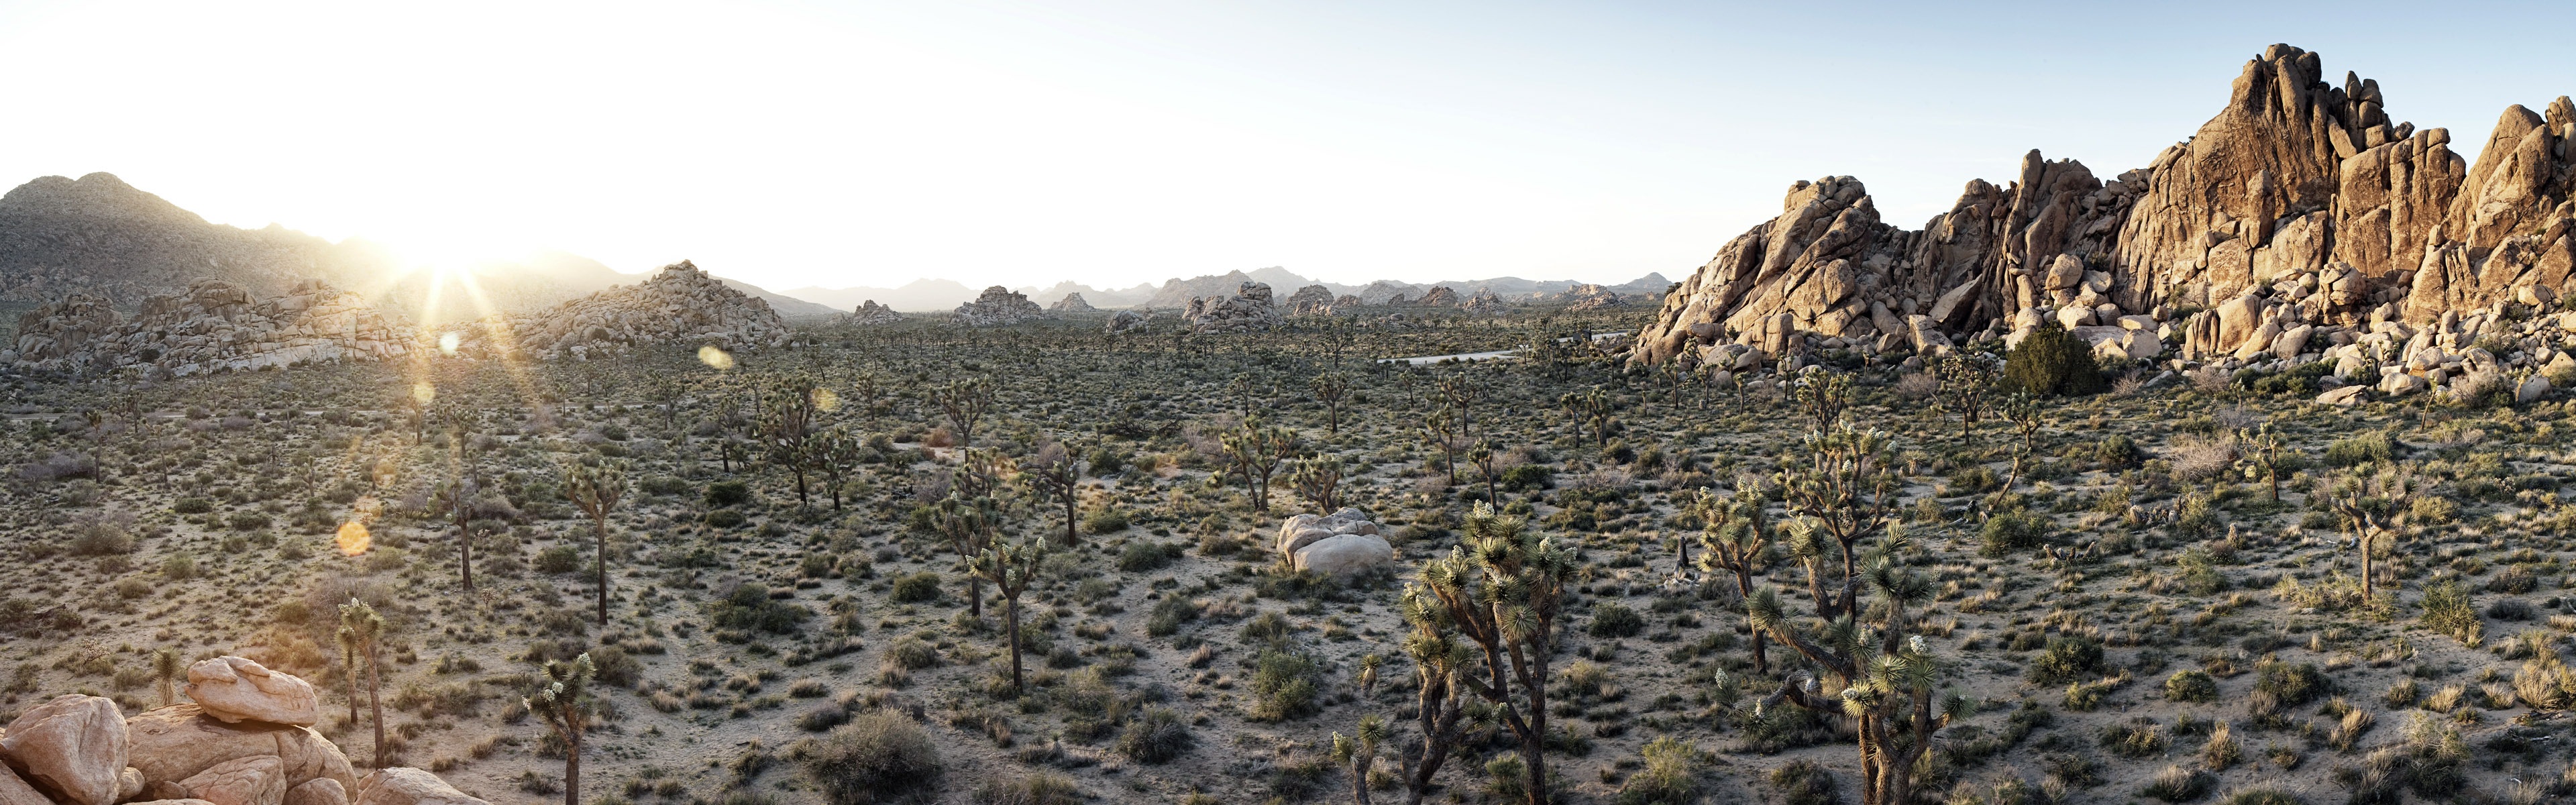 Les déserts chauds et arides, de Windows 8 fonds d'écran widescreen panoramique #9 - 3840x1200